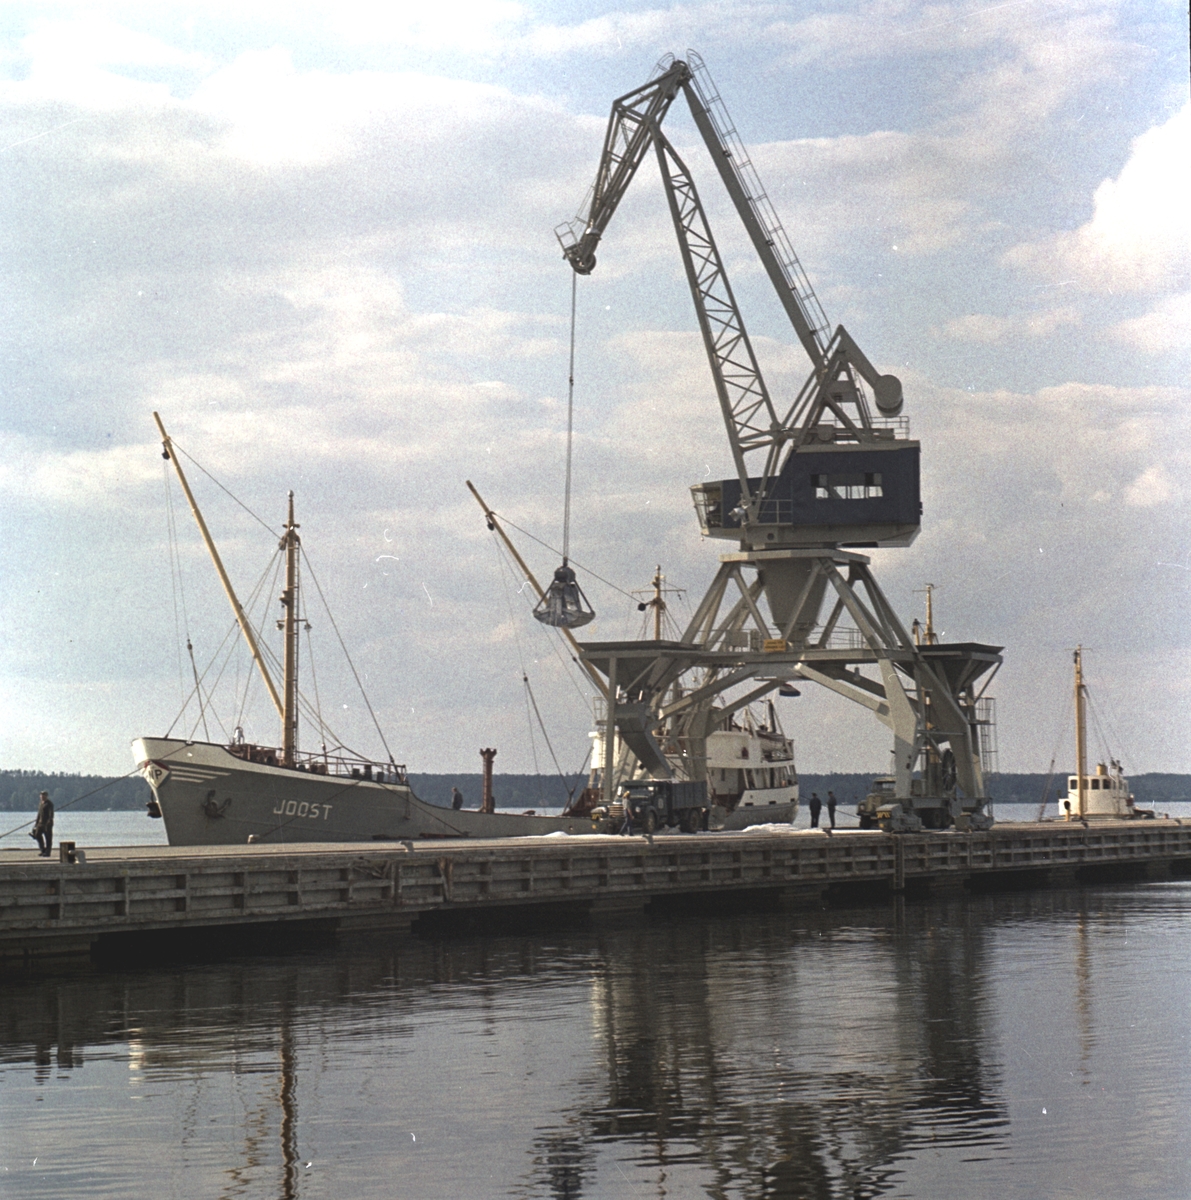 Lyftkran vid fartyget "Joost". Korsnäs AB. Den 25 juni 1963
